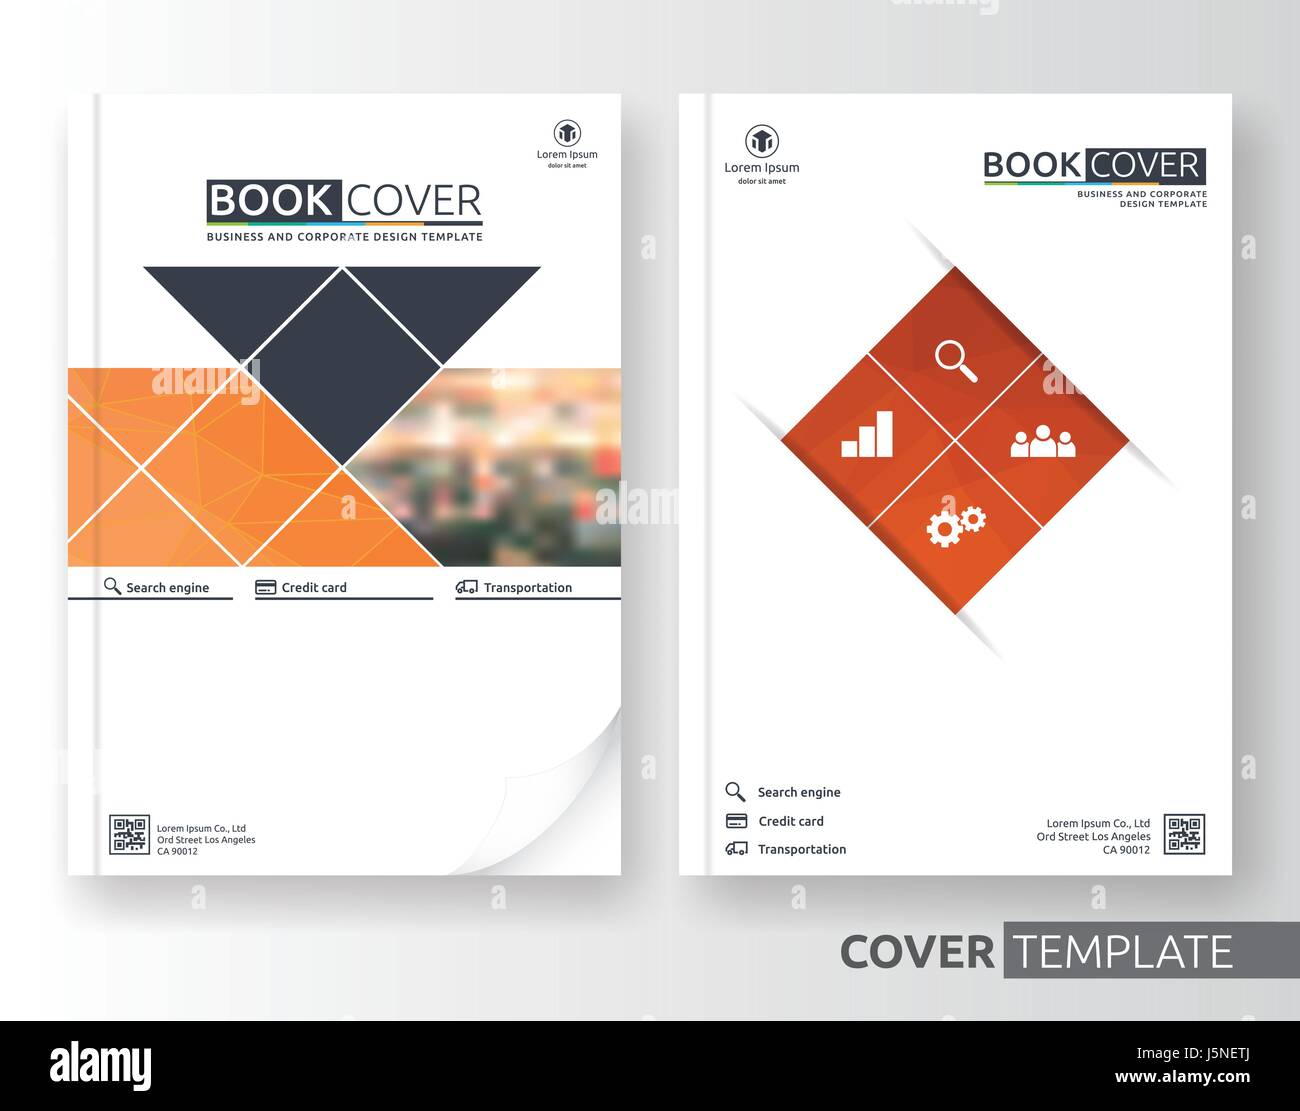 Abstrakt Business und corporate Cover-Design-Layout. Geeignet für Flyer, Broschüre, Buch-Cover und Jahresbericht. Orange-weiße Farbe A4 Größe templa Stock Vektor